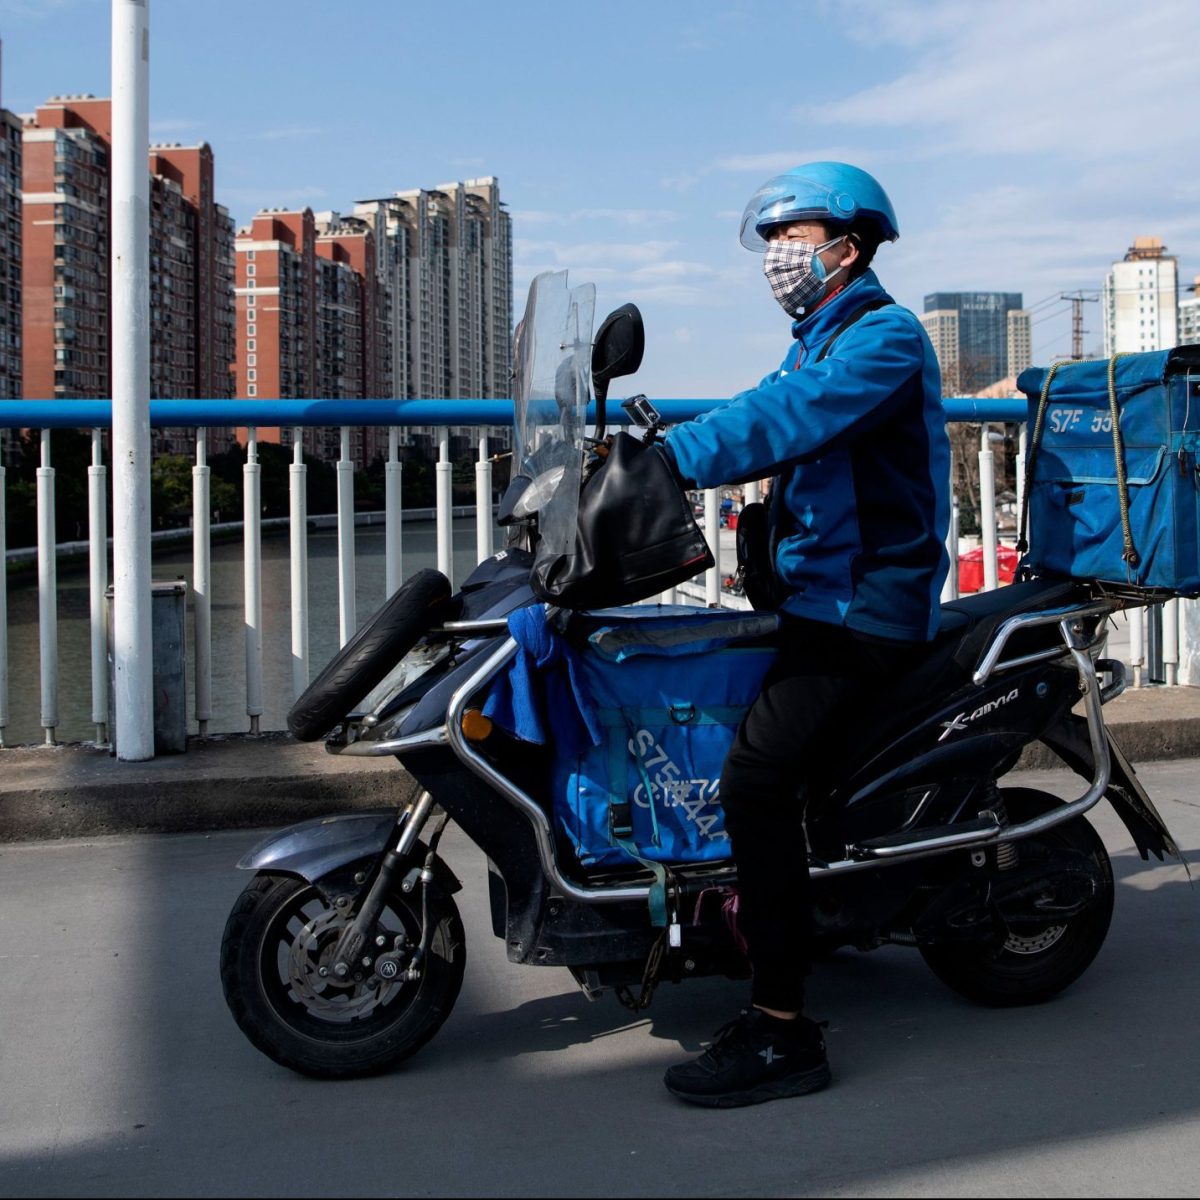 Pekín pondrá chips en motos de repartidores para “detectar acciones ilegales”